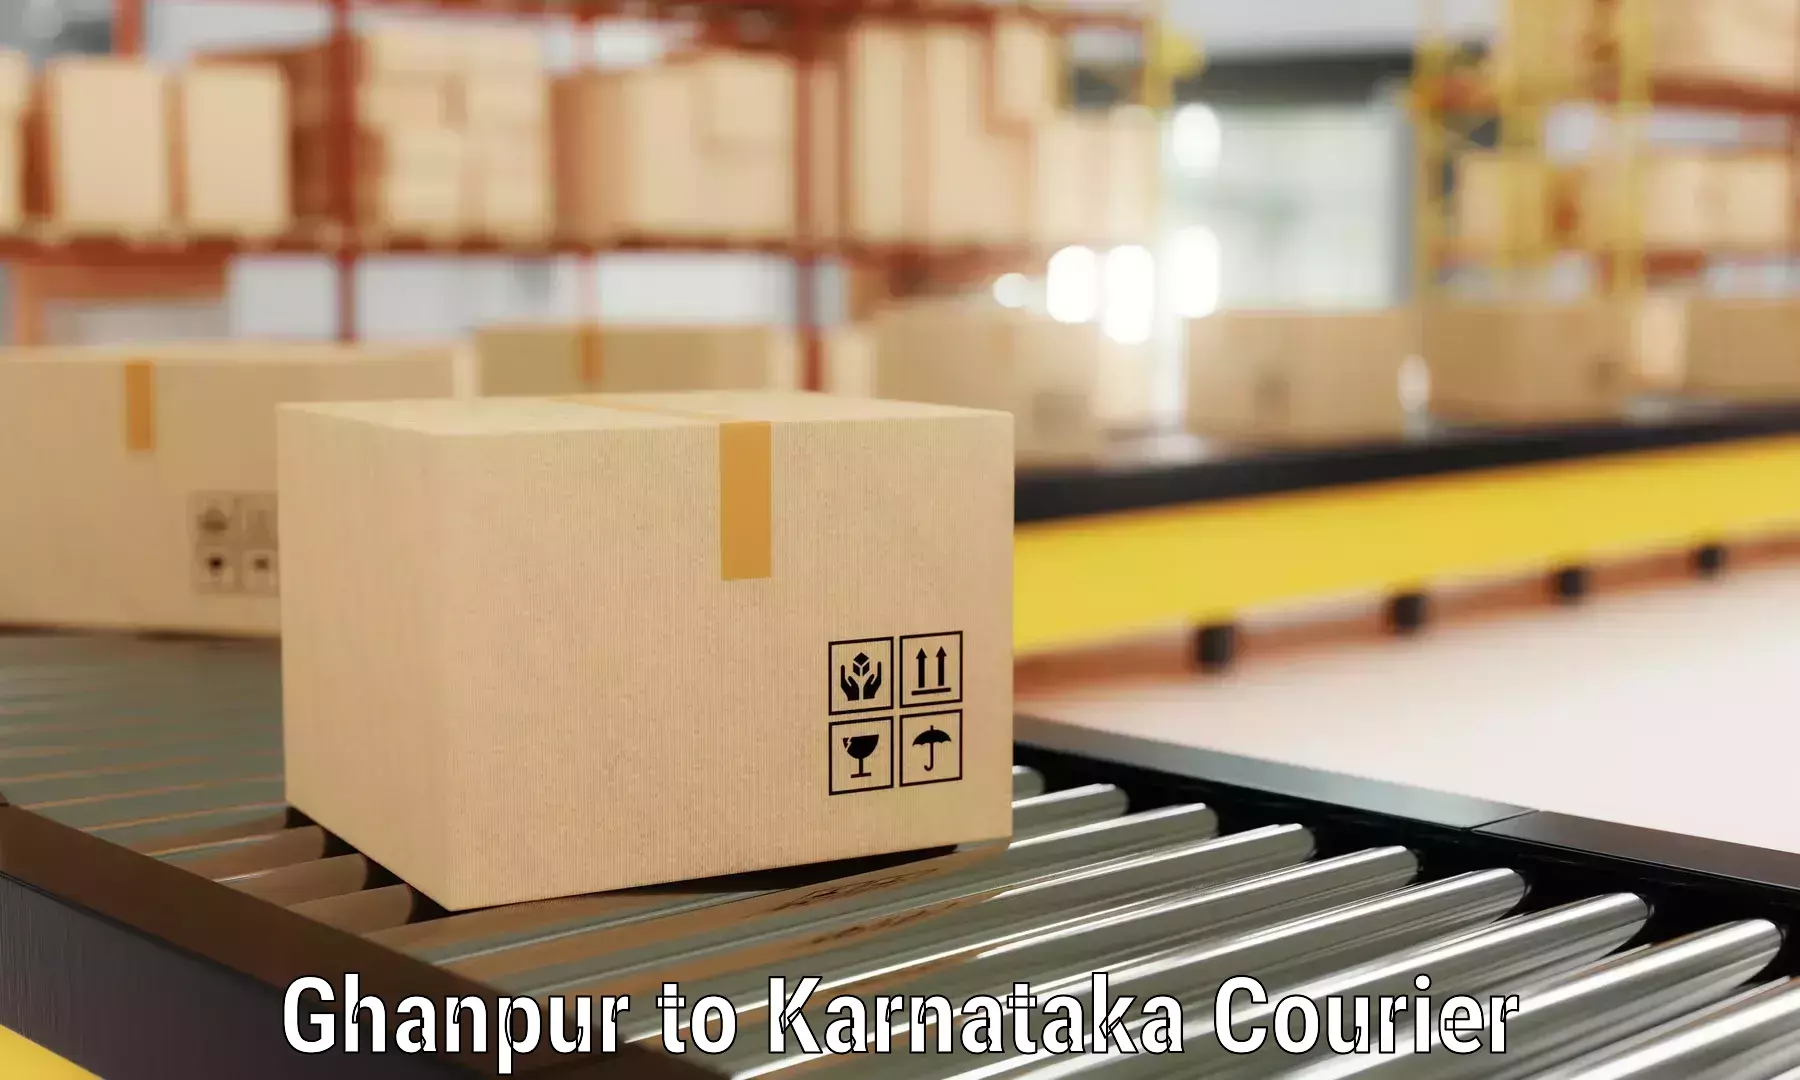 Furniture transport service Ghanpur to Kolhar